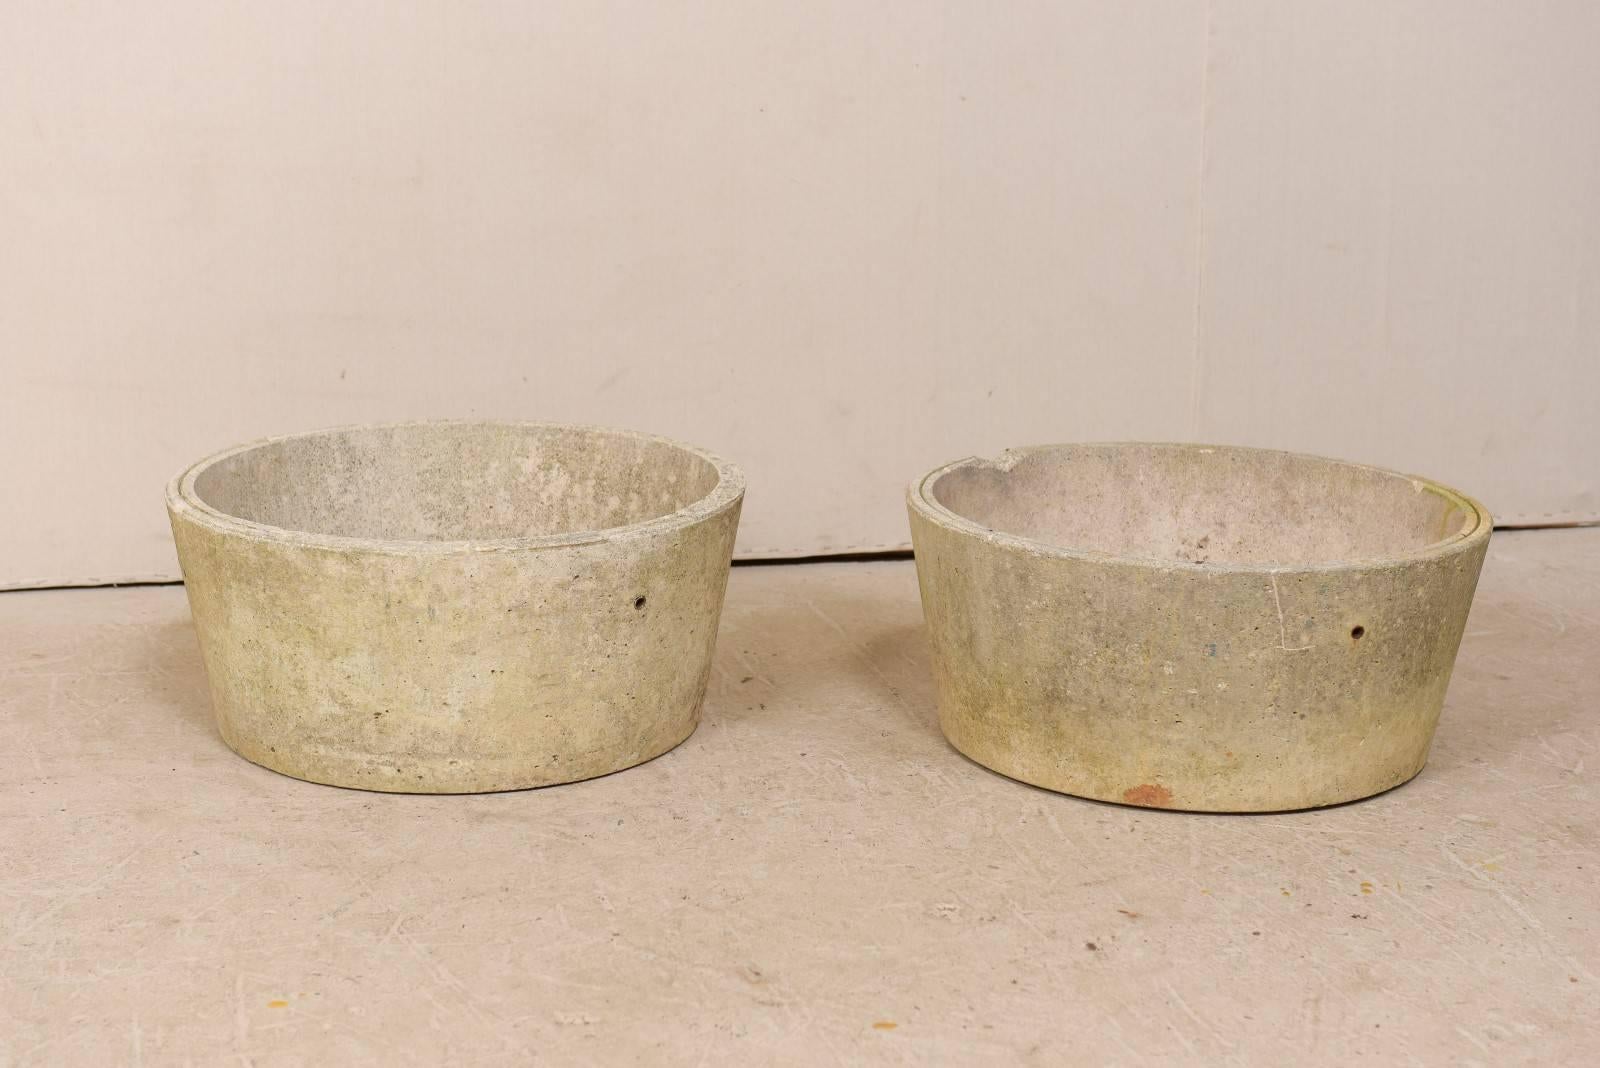 Une paire de pots en béton moulé français du milieu du 20e siècle. Cette paire de pots français vintage, au design simpliste, présente des corps de forme ronde qui s'effilent subtilement vers leur base. Les pots font plus d'un mètre de large et ont